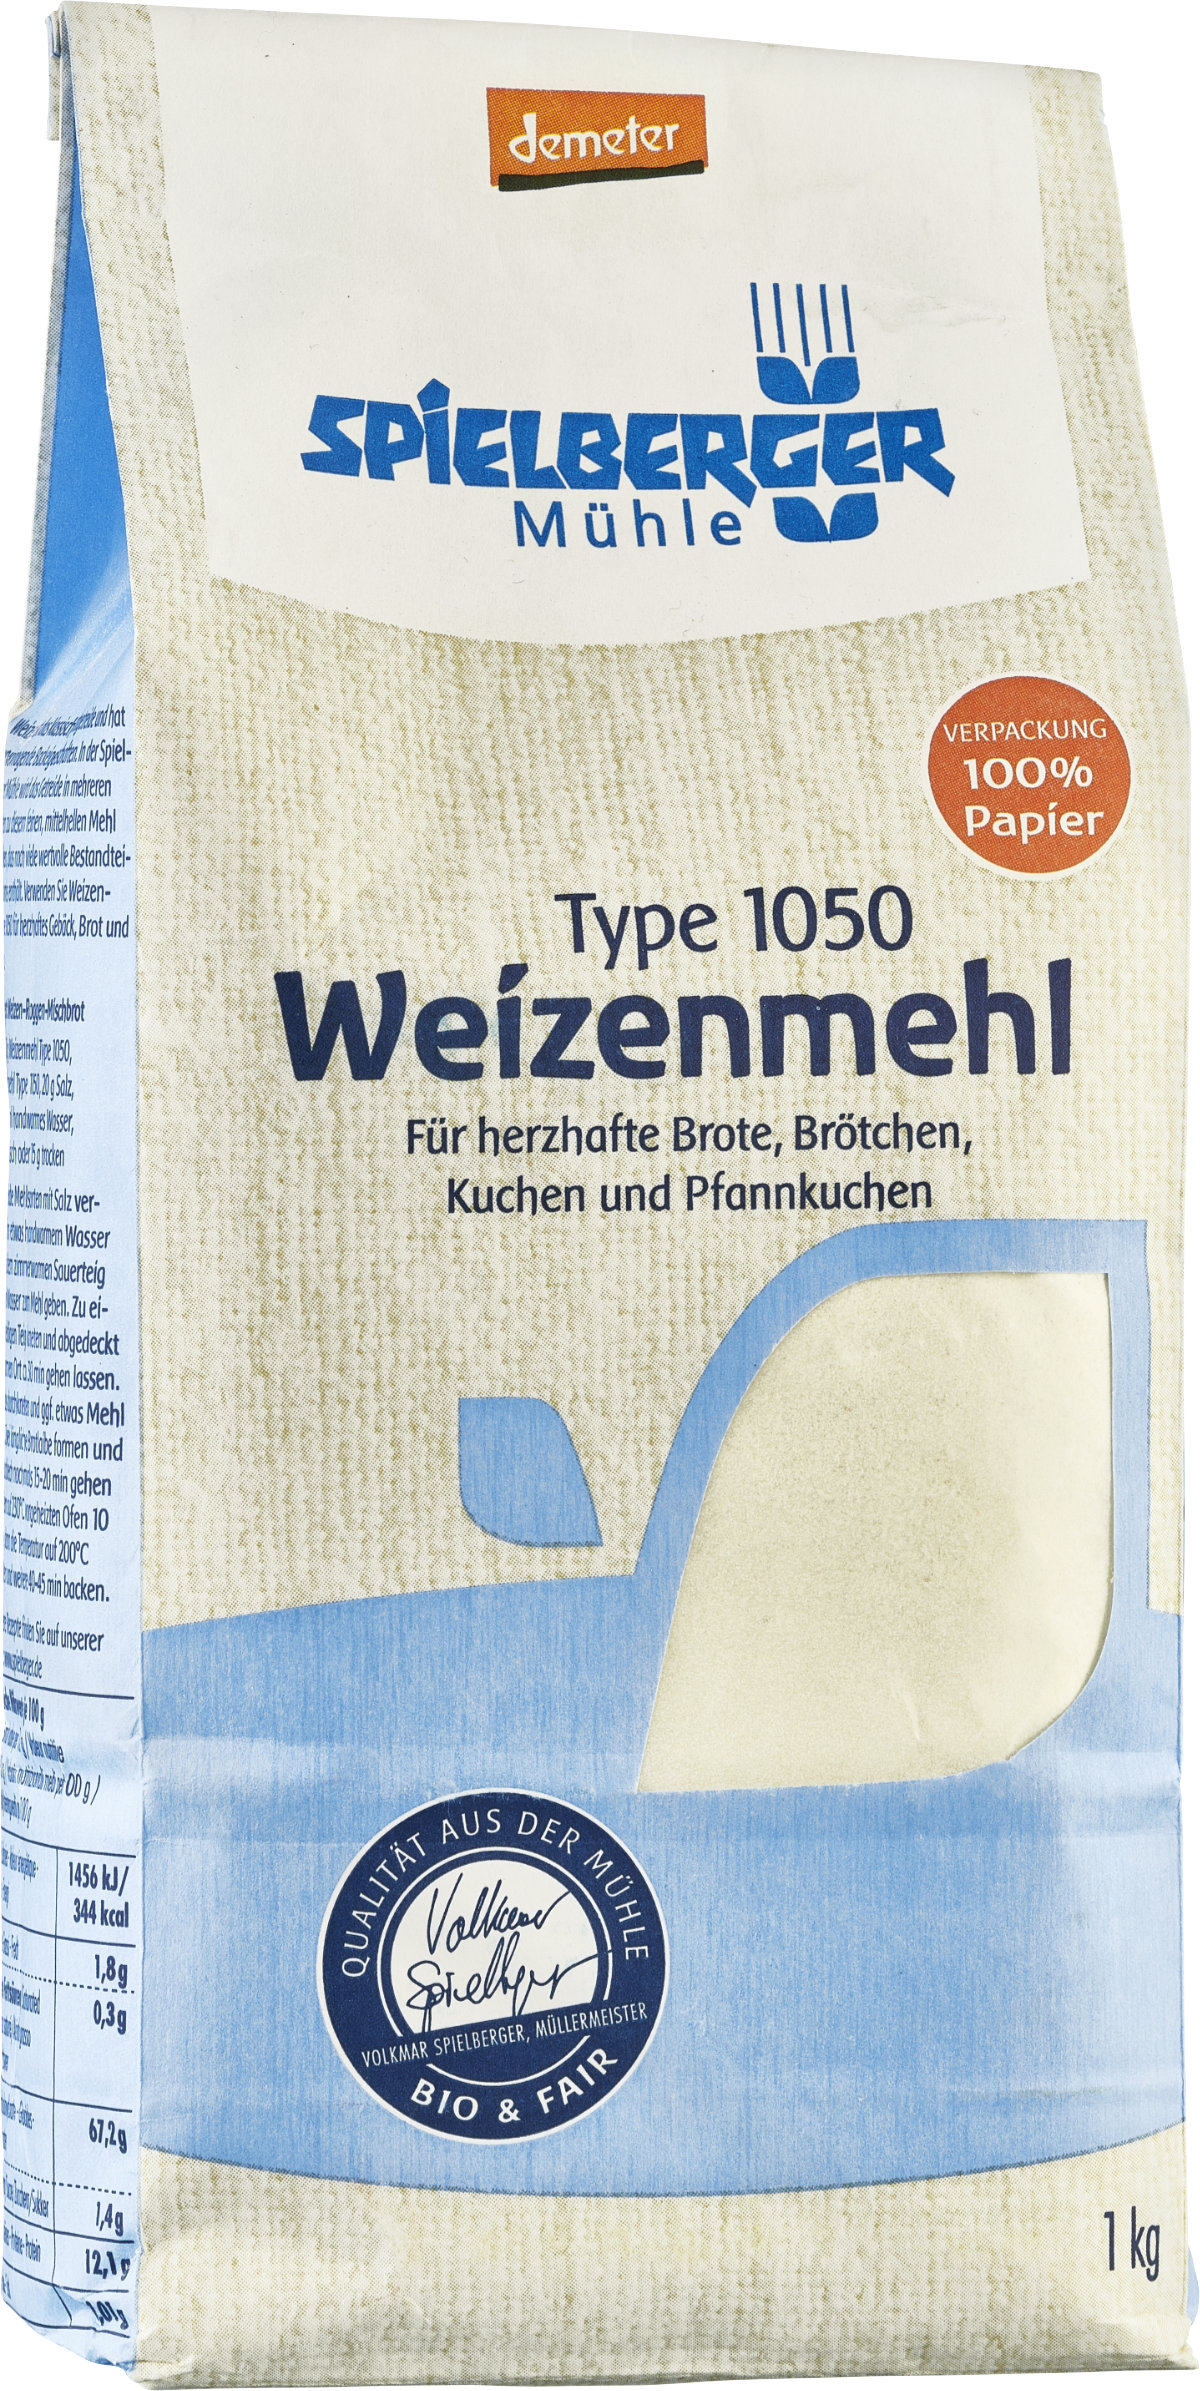 SPIELBERGER - Weizenmehl Type 1050 demeter 1kg